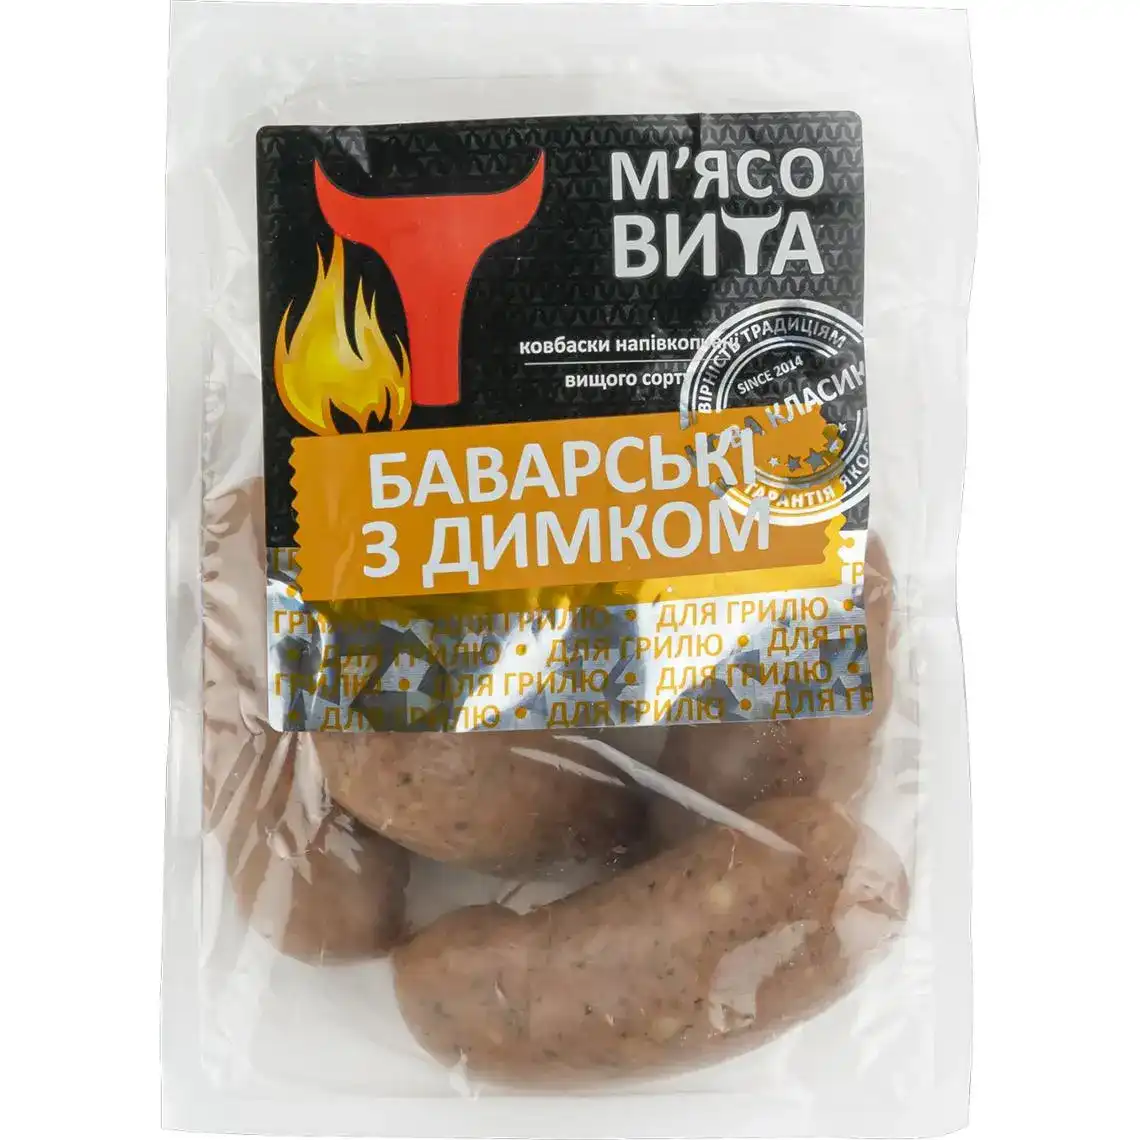 Колбаски М'ясовита Баварски с дымком высший сорт весовые